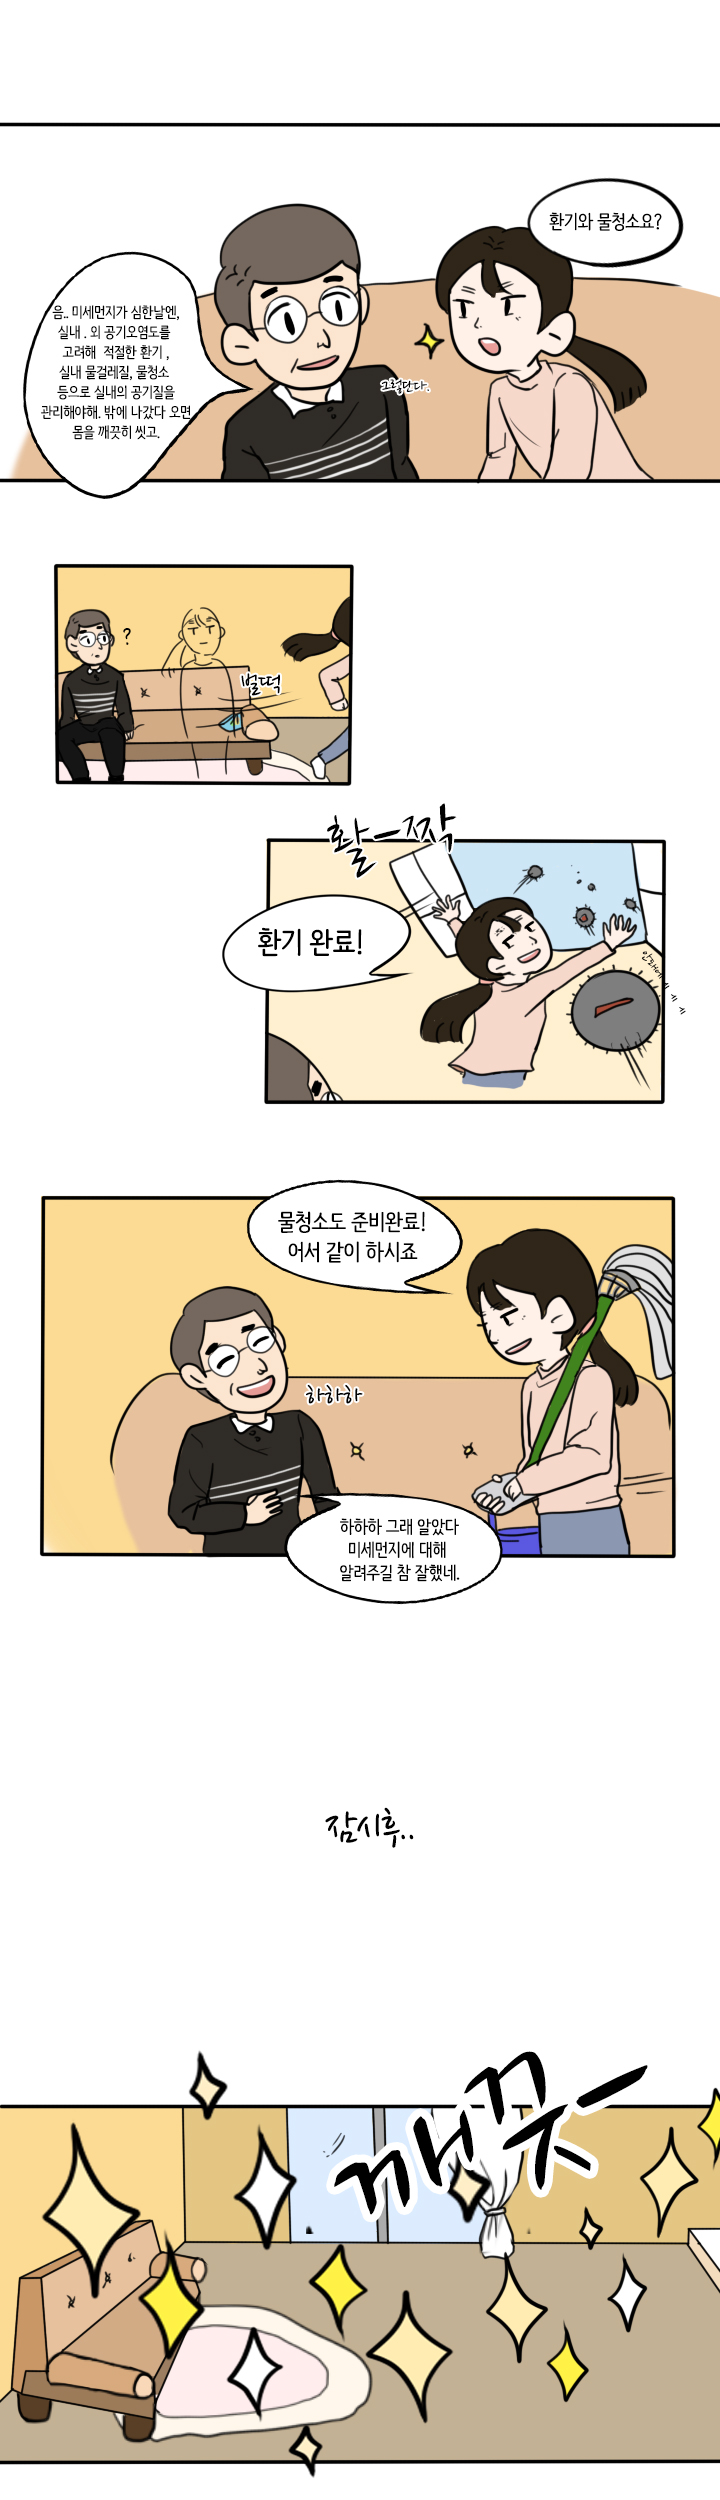 (푸른하늘 웹툰공모전 입선) 수아의 행복한하루 feat 사라져라 미세먼지4